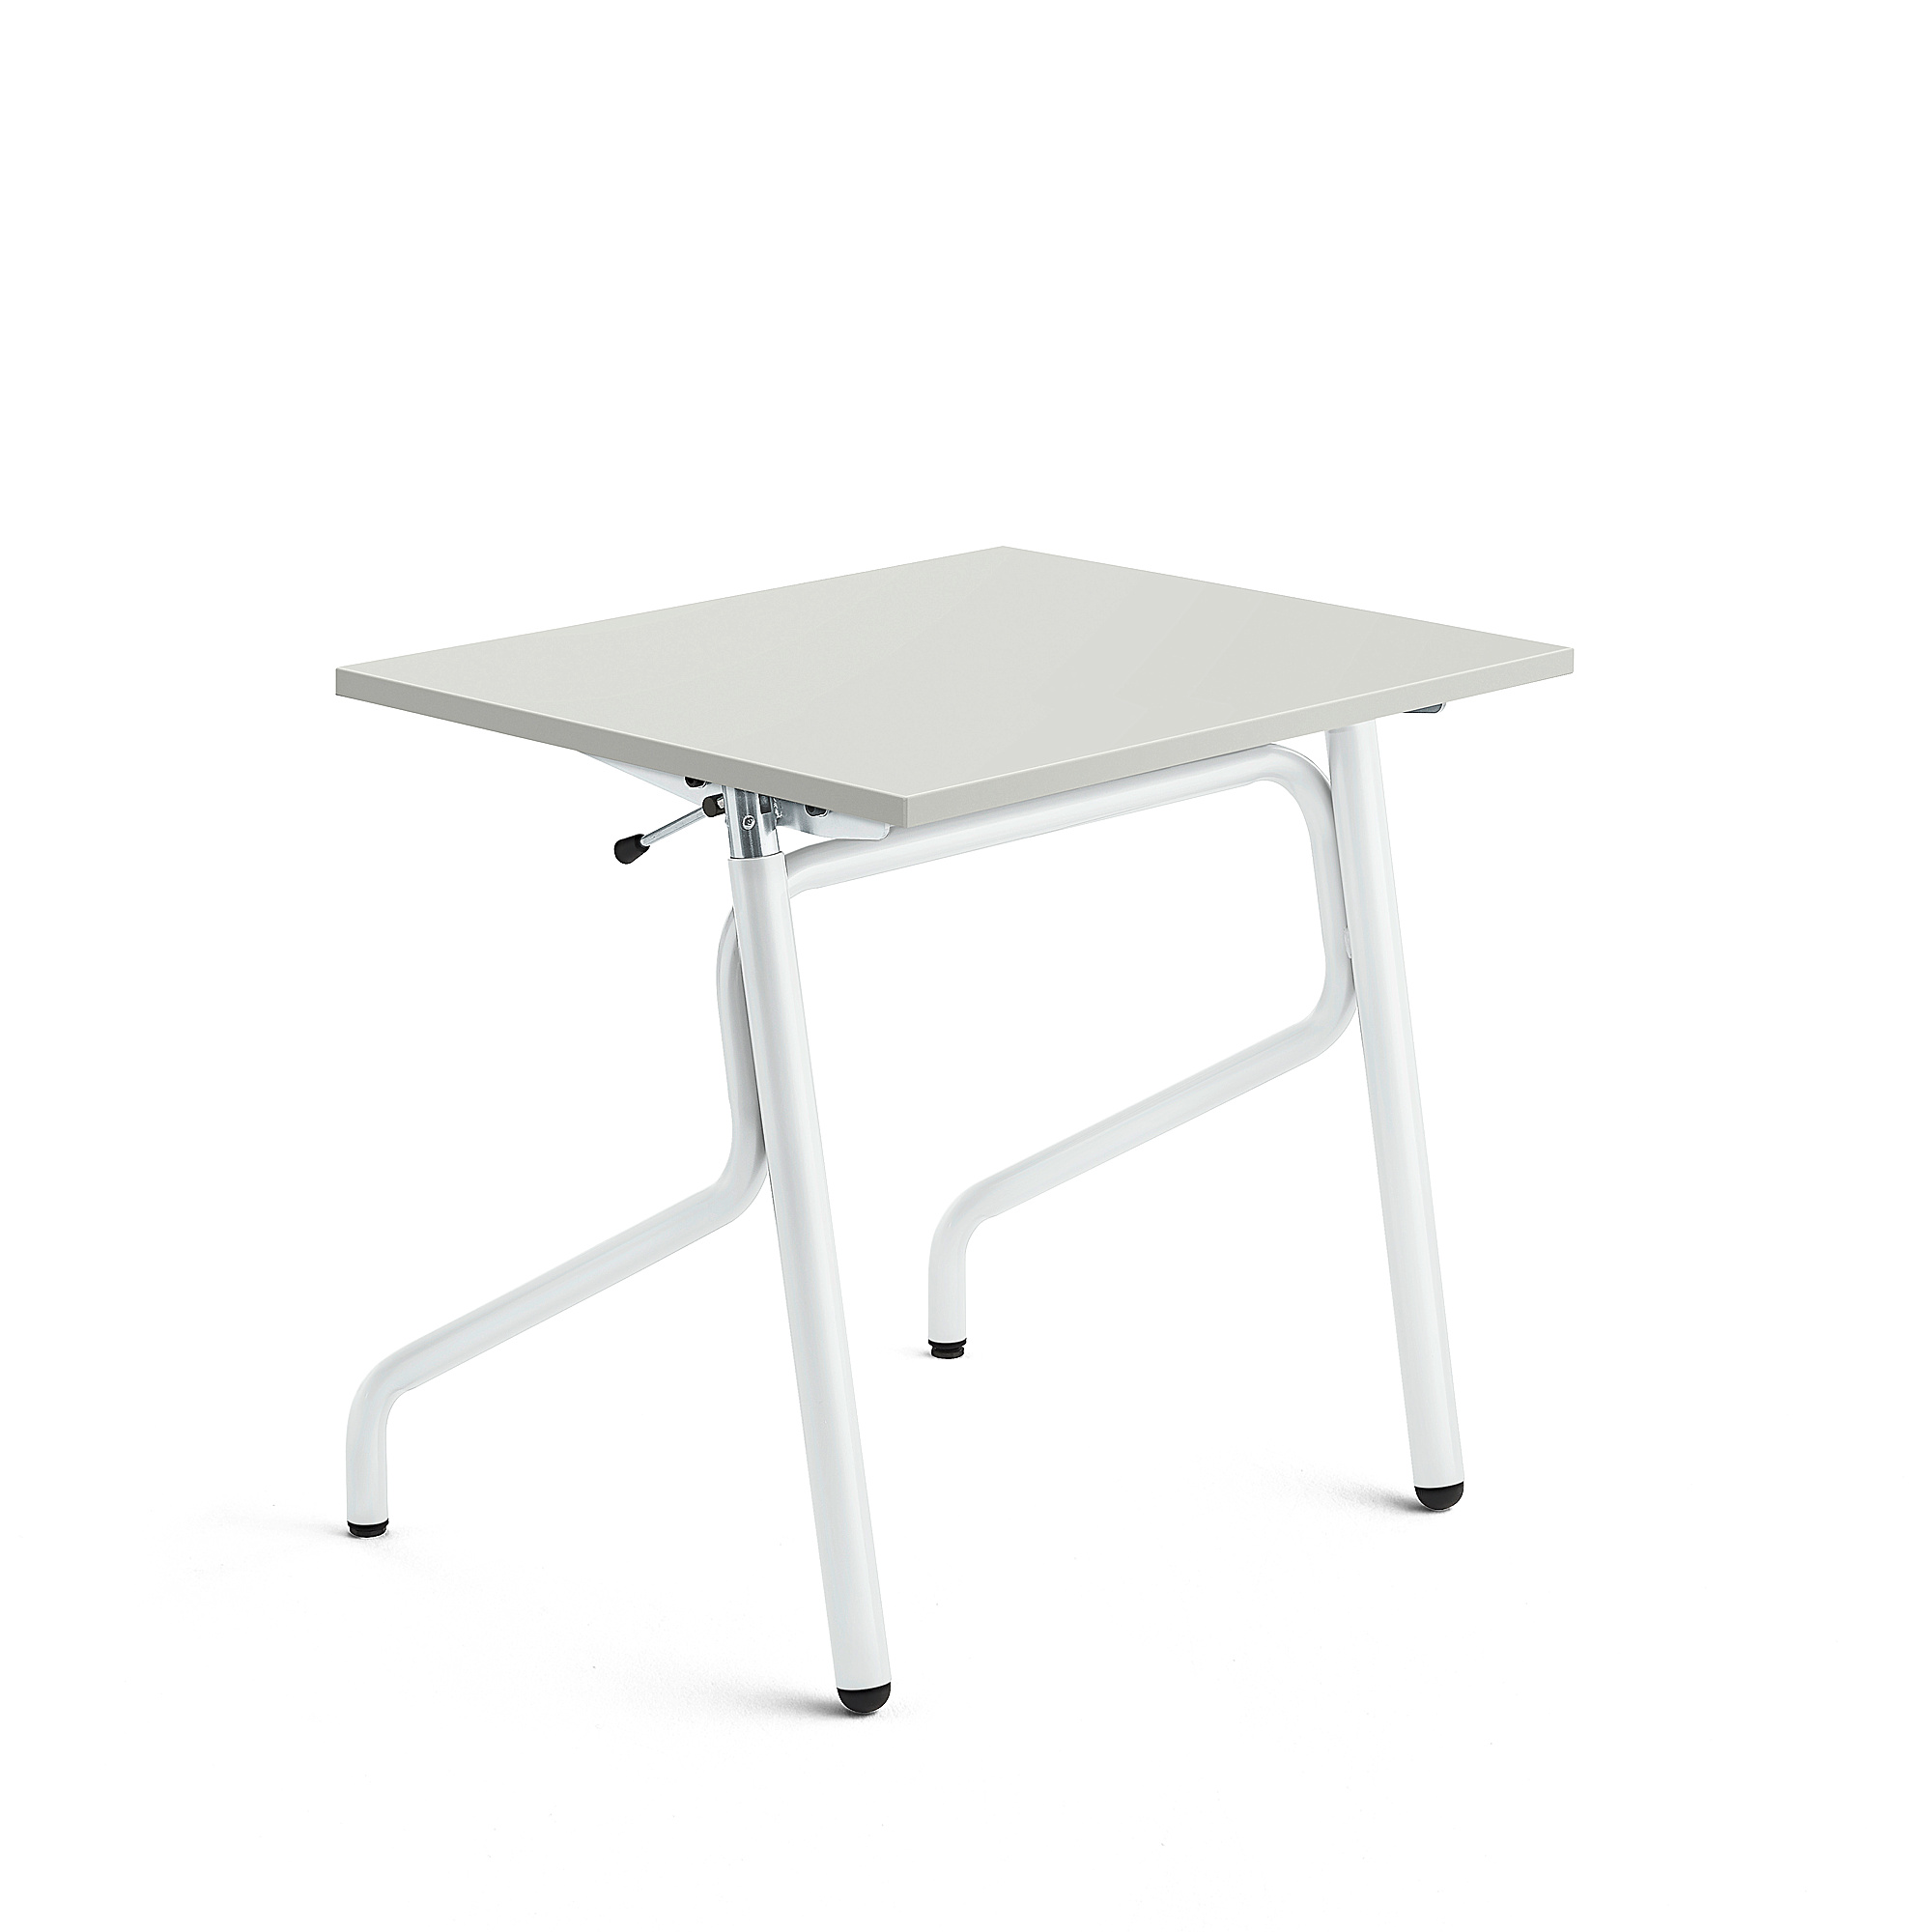 Školní lavice ADJUST, výškově nastavitelná, 700x600 mm, HPL deska tlumící hluk, šedá, bílá